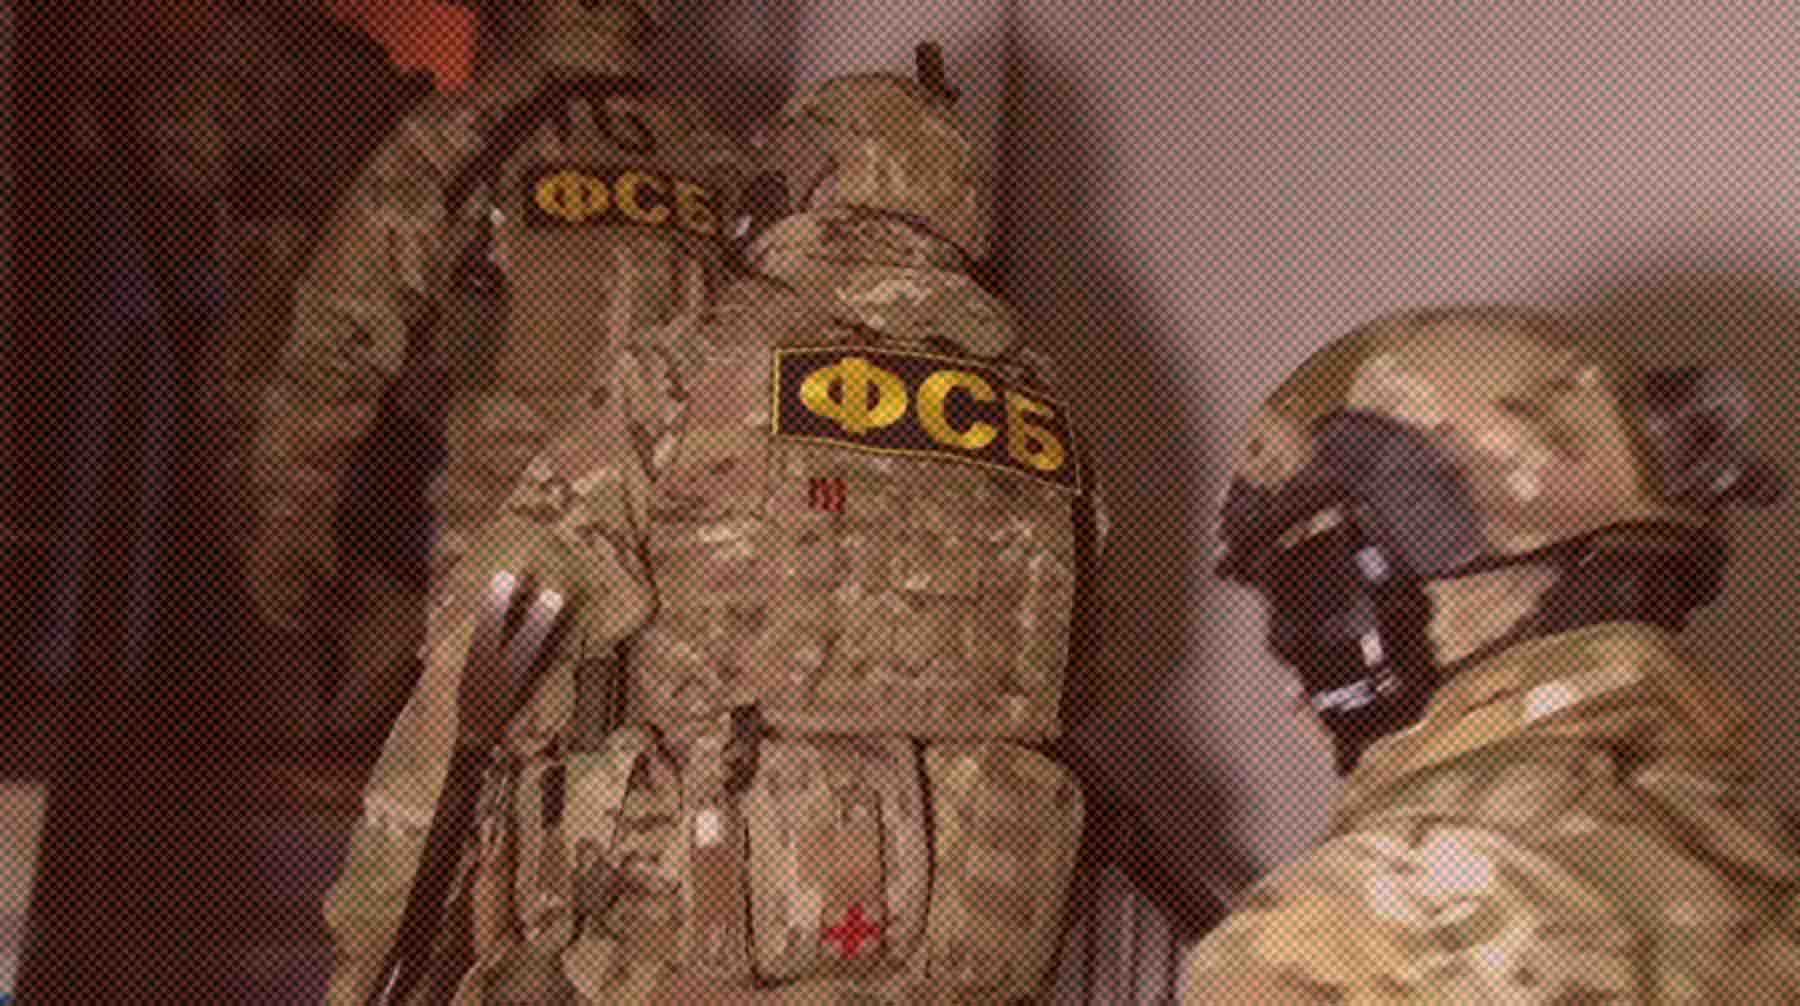 Dailystorm - Сотрудники ФСБ накрыли крупную нарколабораторию в Подмосковье, контролируемую с Украины